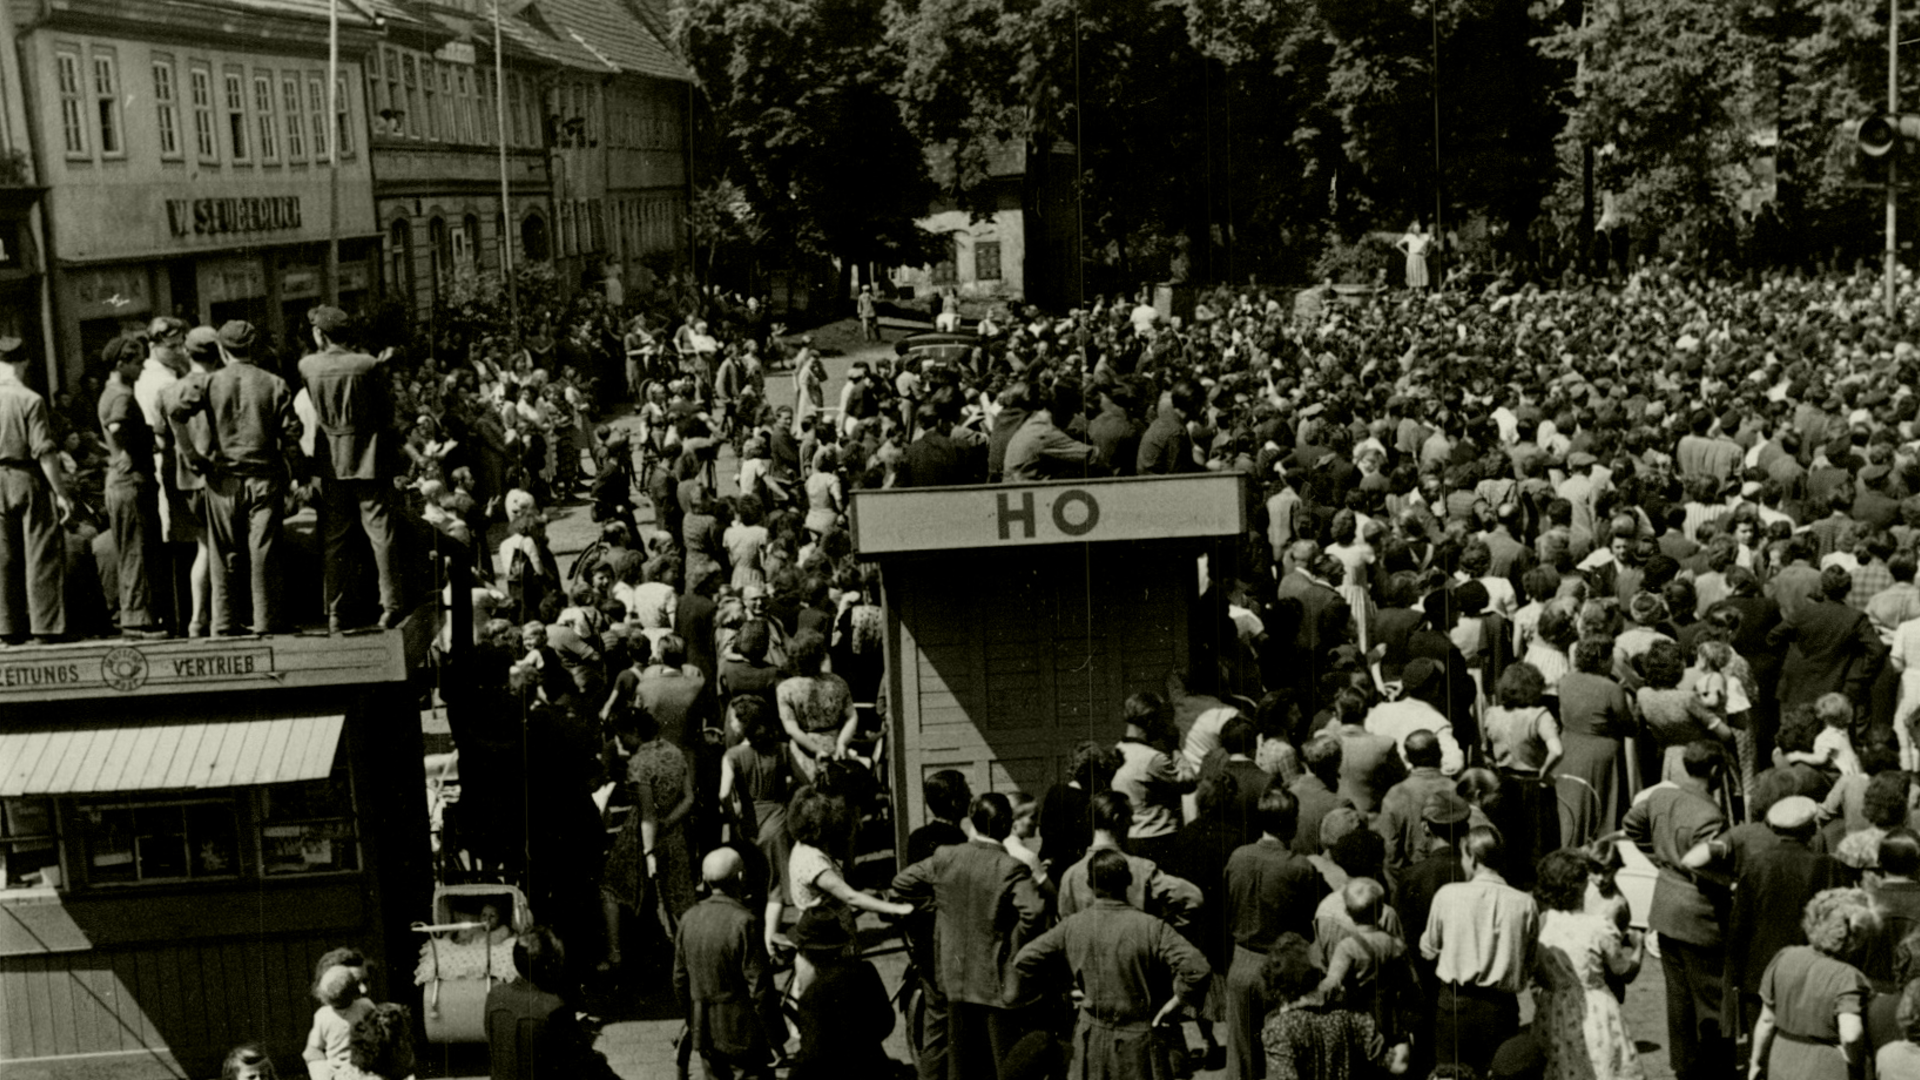 Der Marktplatz des thüringischen Sömmerda am 17. Juni 1953: Im Hintergrund die Menschenmenge, die anscheinend einer Kundgebung beiwohnt. Im Vordergrund die Bretterbuden "Zeitungsvertrieb" und "HO, auf denen Menschen sitzen oder stehen. Ganz vorne weitere Menschen, manche von ihnen mit Fahrrädern. Auf der Rückseite des Fotos ist handschriftlich vermerkt: "Sömmerda am 17.6.53 – Demonstranten auf dem Marktplatz in Sömmerda (Rheinmetall).